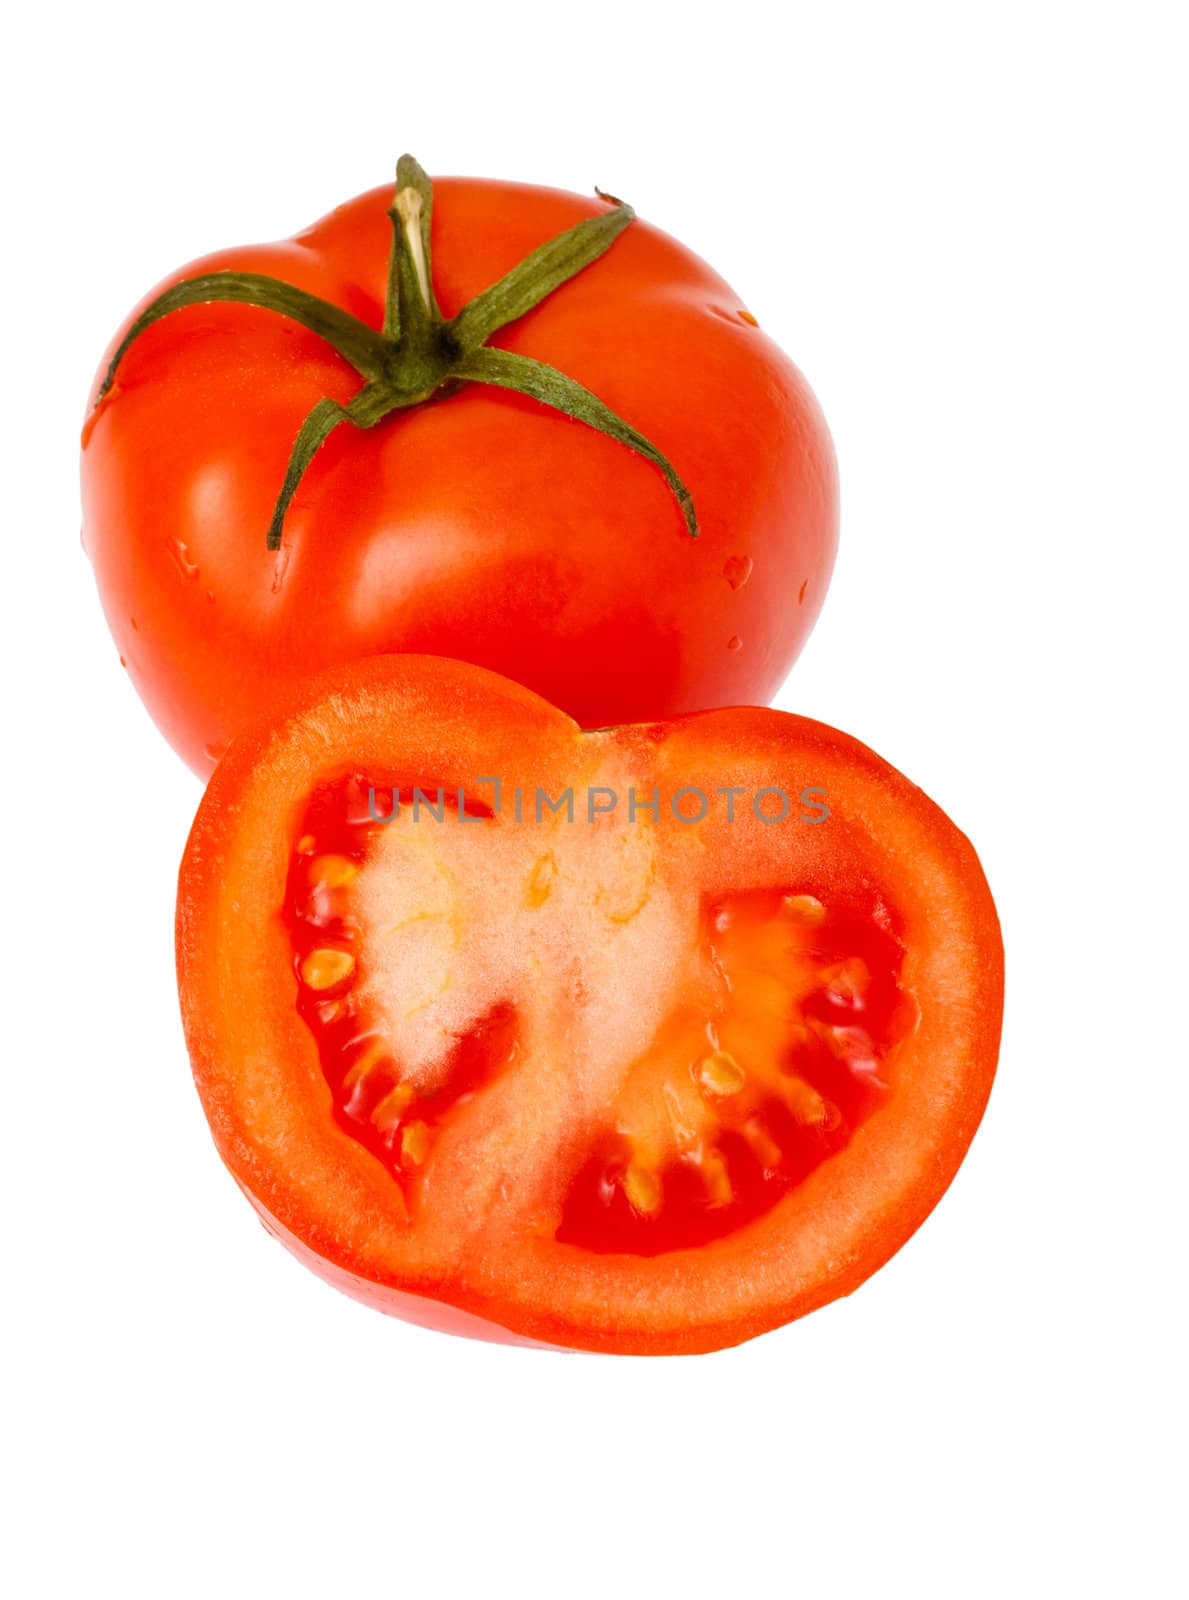 fresh tomatoes by petr_malyshev